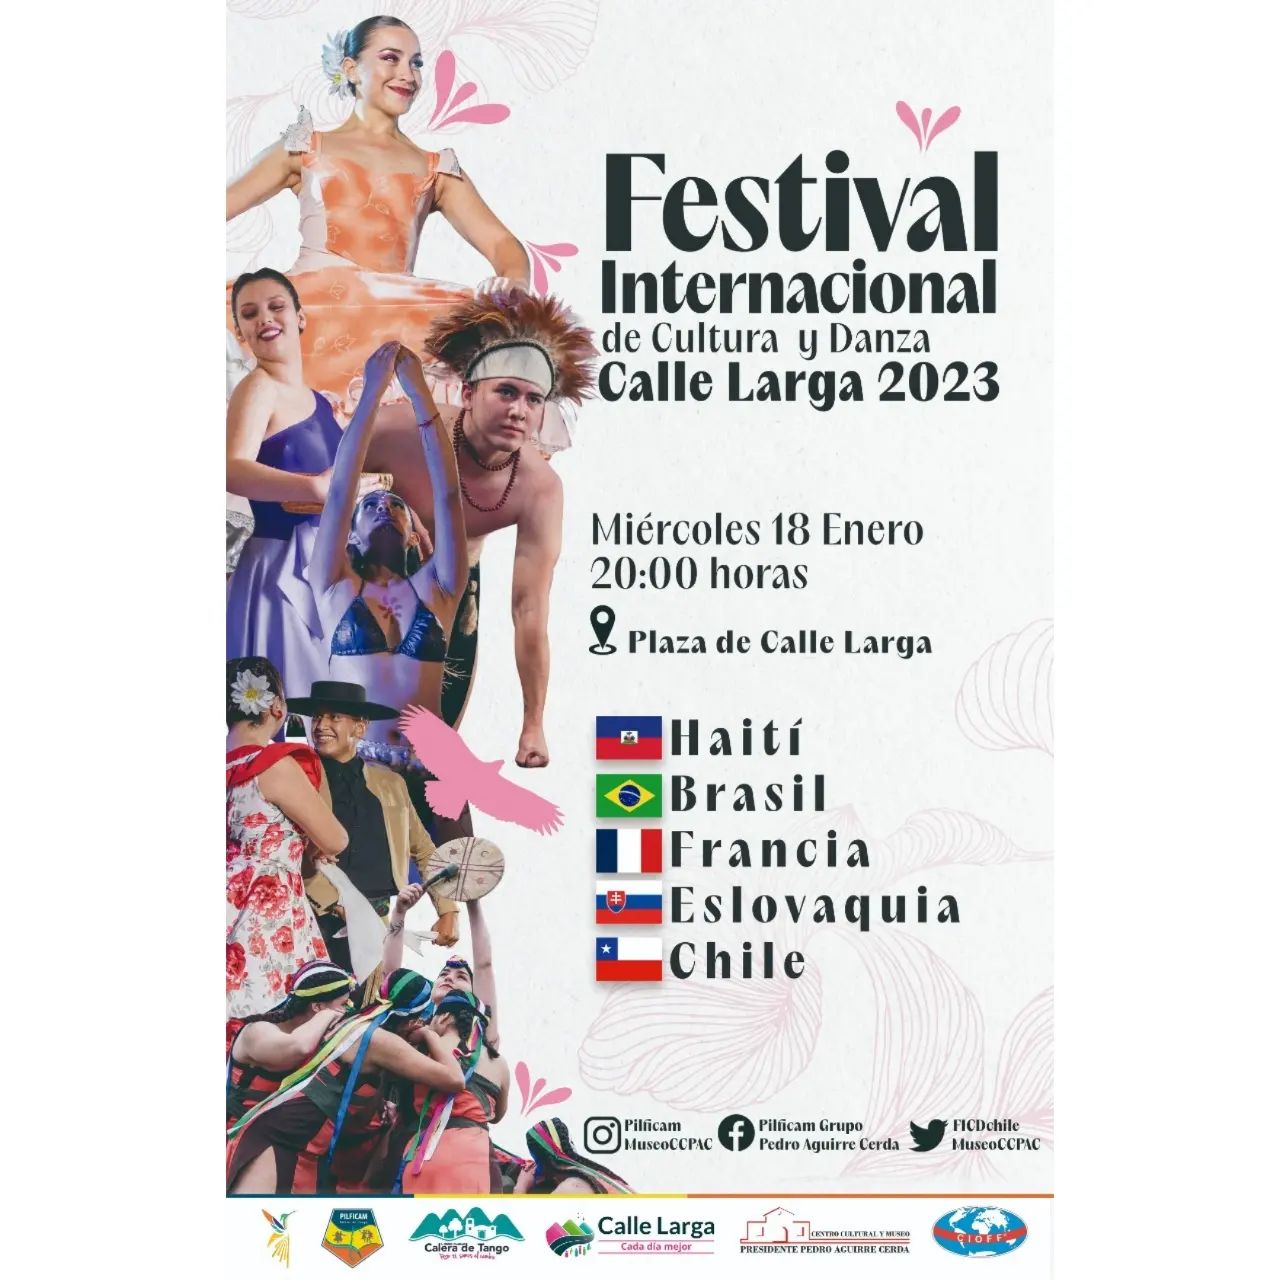 Festival Internacional de Cultura y Danza tiene su primera fecha en Calle Larga